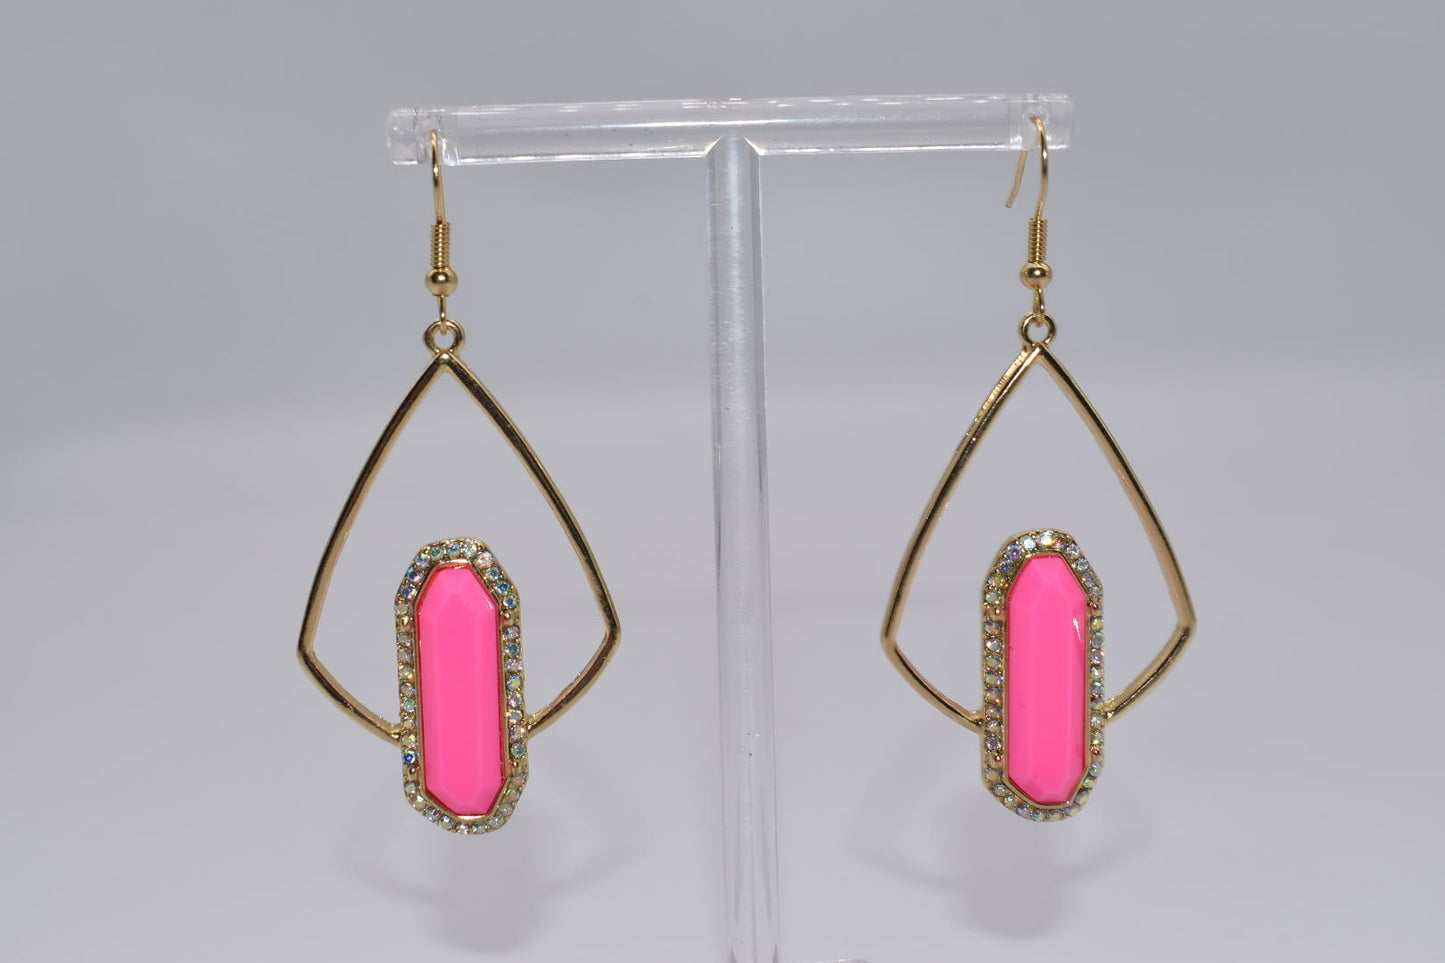 Statement Earrings: You're a Gem Hot Pink Stone Drop Earrings